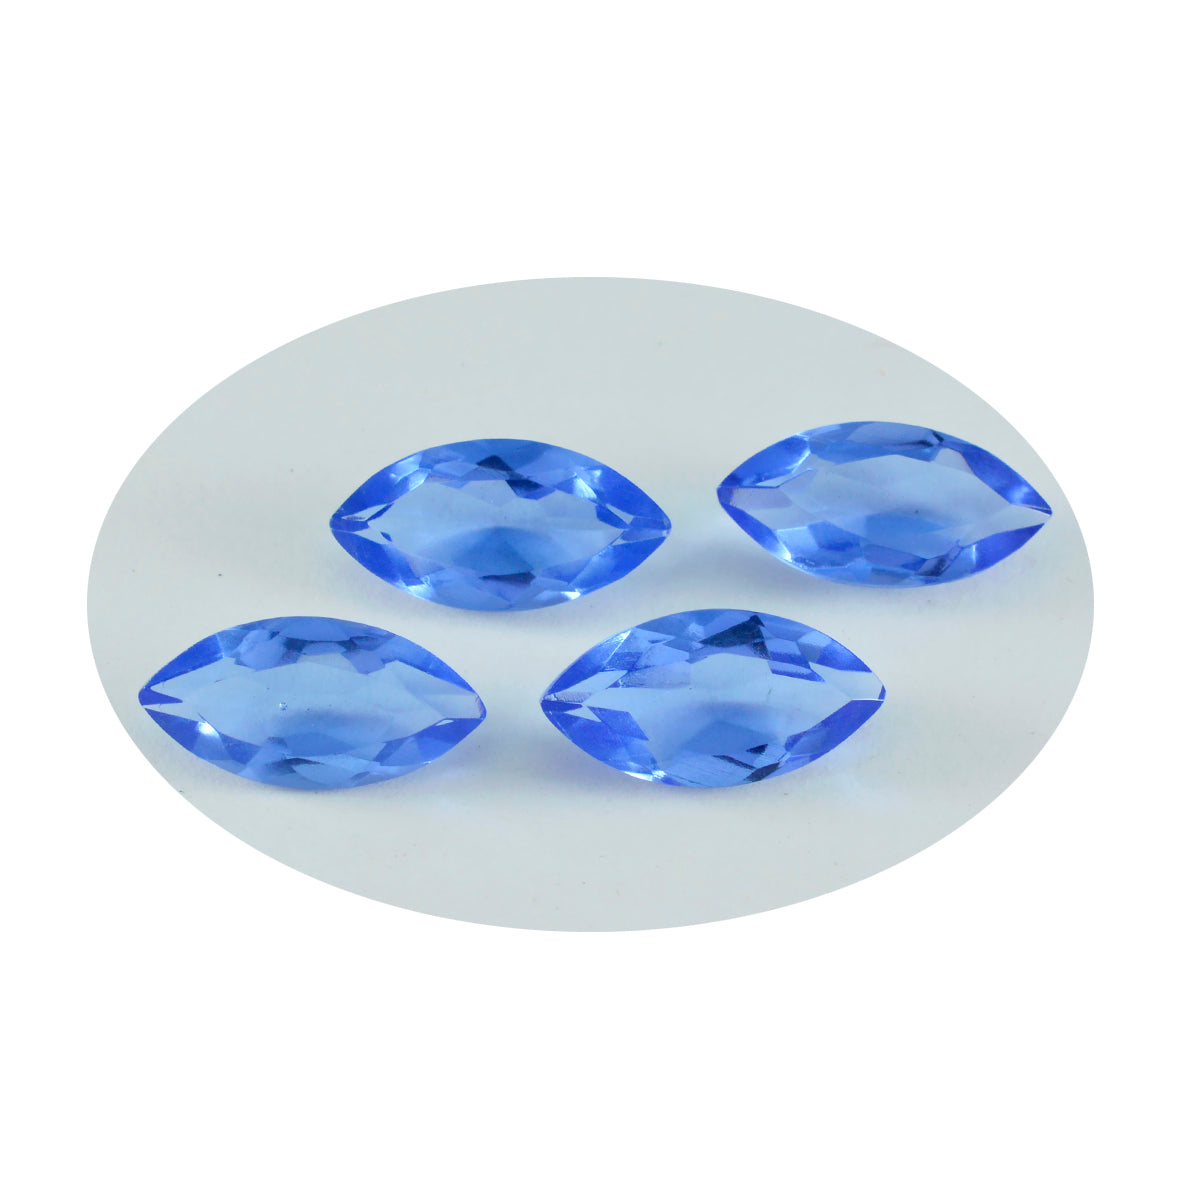 riyogems 1шт синий сапфир cz ограненный 10x20 мм форма маркиза качественный сыпучий драгоценный камень